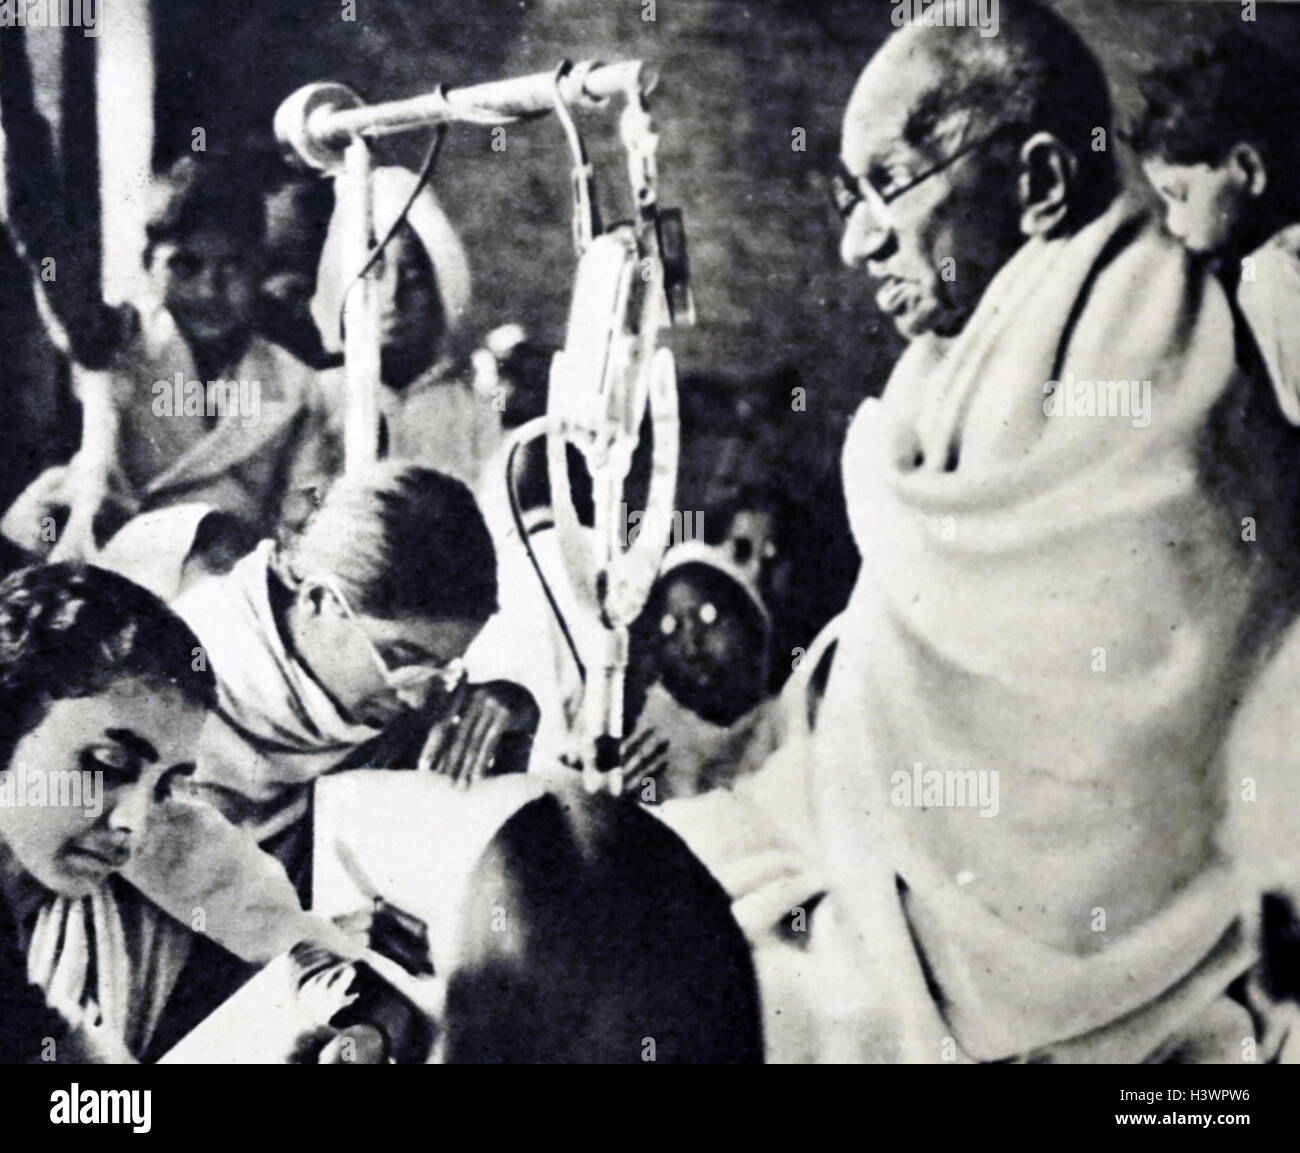 Foto einer Ausgemergelten Mahatma Gandhi (1869-1948) Die herausragende Führer der indischen Unabhängigkeitsbewegung in Britisch - Indien regiert. Vom 20. Jahrhundert Stockfoto